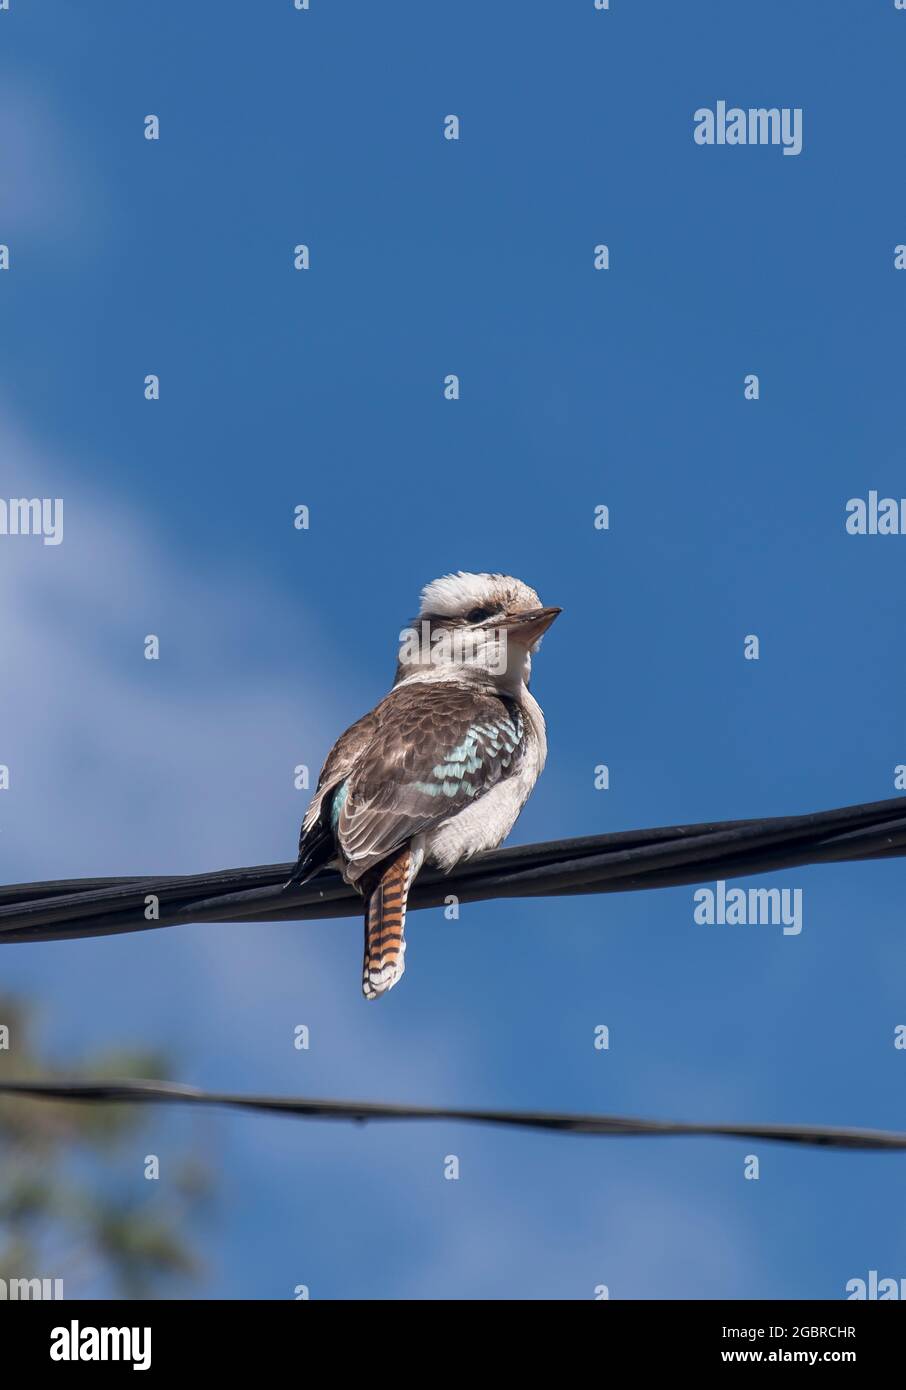 Retro di Laughing Kookaburra (drakelo) appollaiato su un cavo di alimentazione elettrica in una giornata di sole a Queensland, Australia. Cielo blu. Inverno. Spazio di copia. Foto Stock